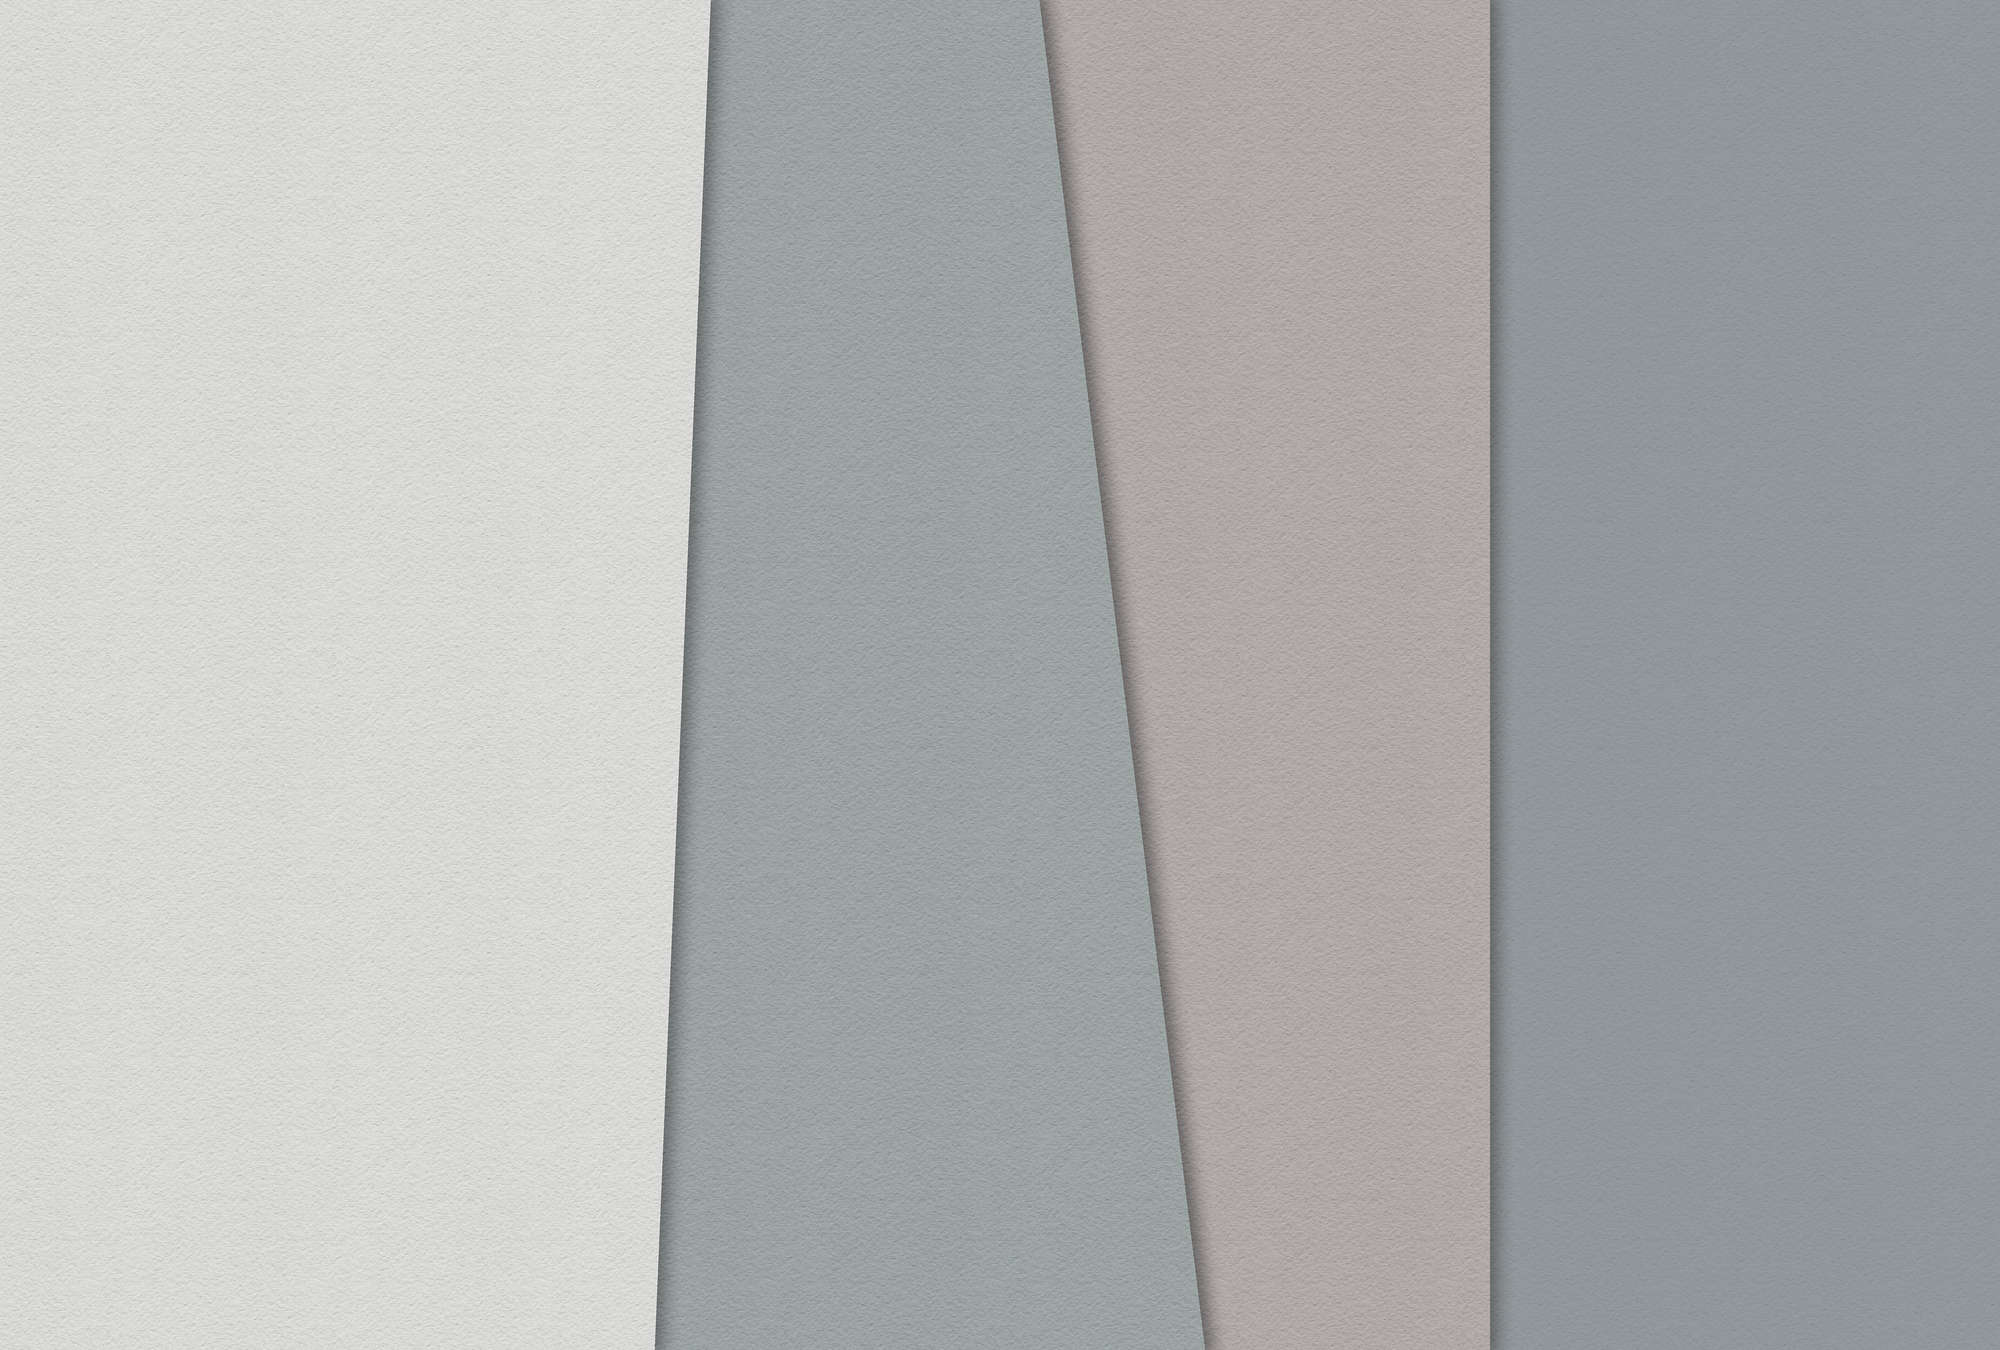             Layered paper 1 - Grafische Fototapete mit Farbflächen in Büttenpapier Struktur – Blau, Creme | Perlmutt Glattvlies
        